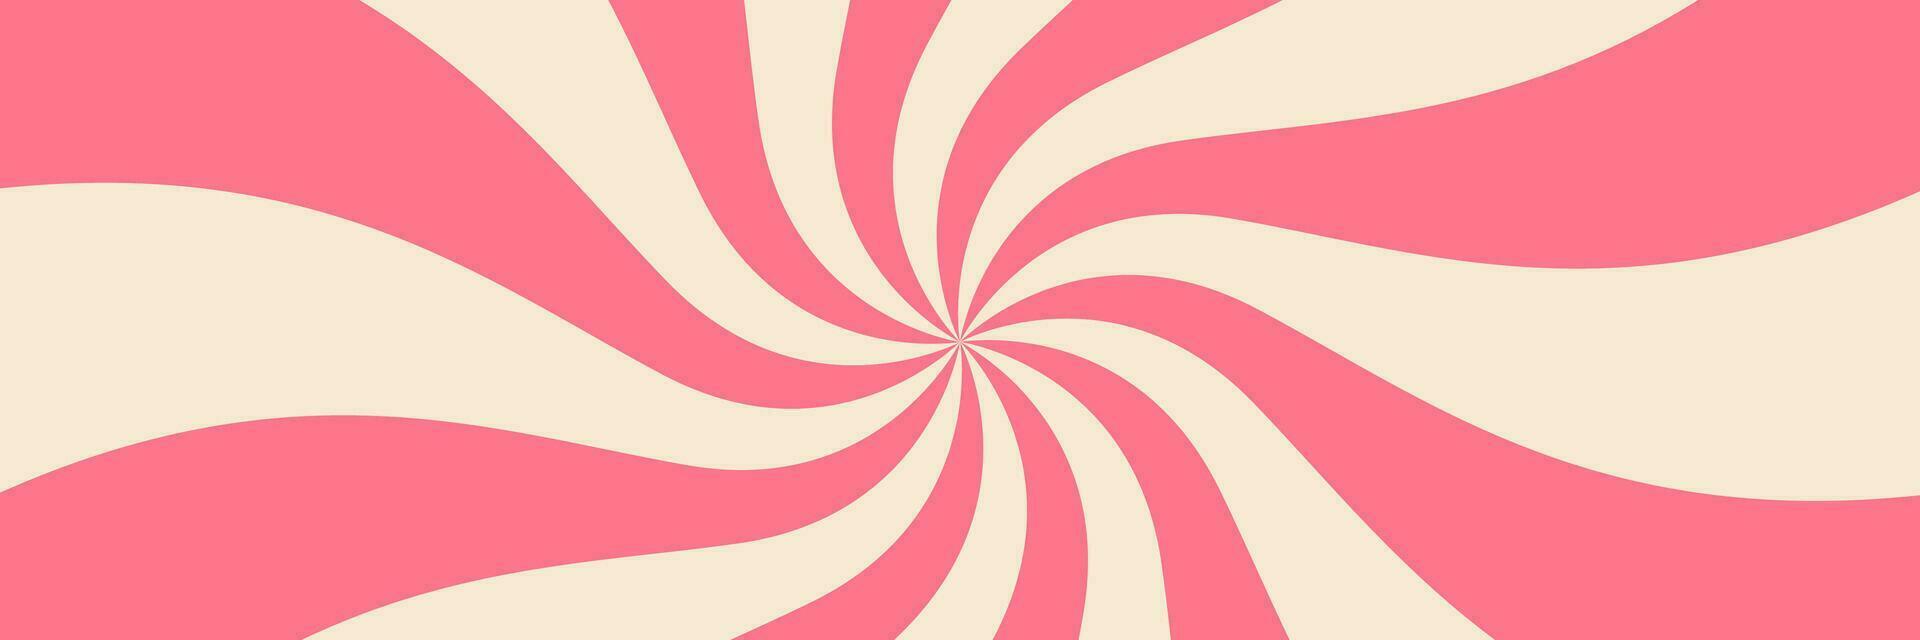 vorticoso radiale ghiaccio crema sfondo. vettore illustrazione per turbine design. estate. vortice spirale volteggiare. rosa. elica rotazione raggi. convergente psychadelic scalabile strisce. divertimento sole leggero travi.